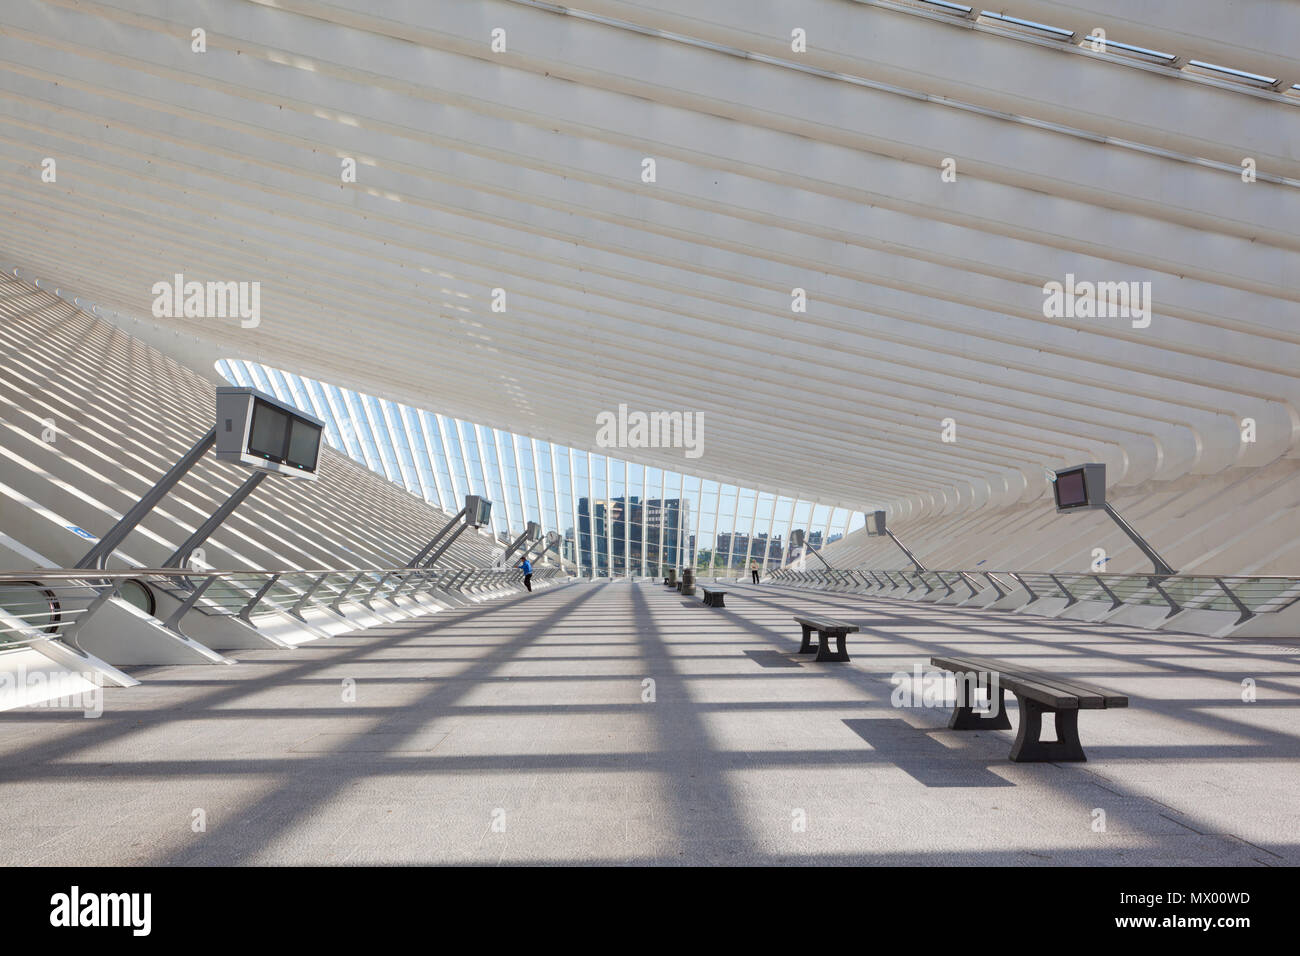 Liegi Guillemins stazione ferroviaria. Questo è il livello al di sopra delle vie di accesso alle diverse piattaforme tramite escalator, auto-a piedi il convogliatore e scale. Foto Stock